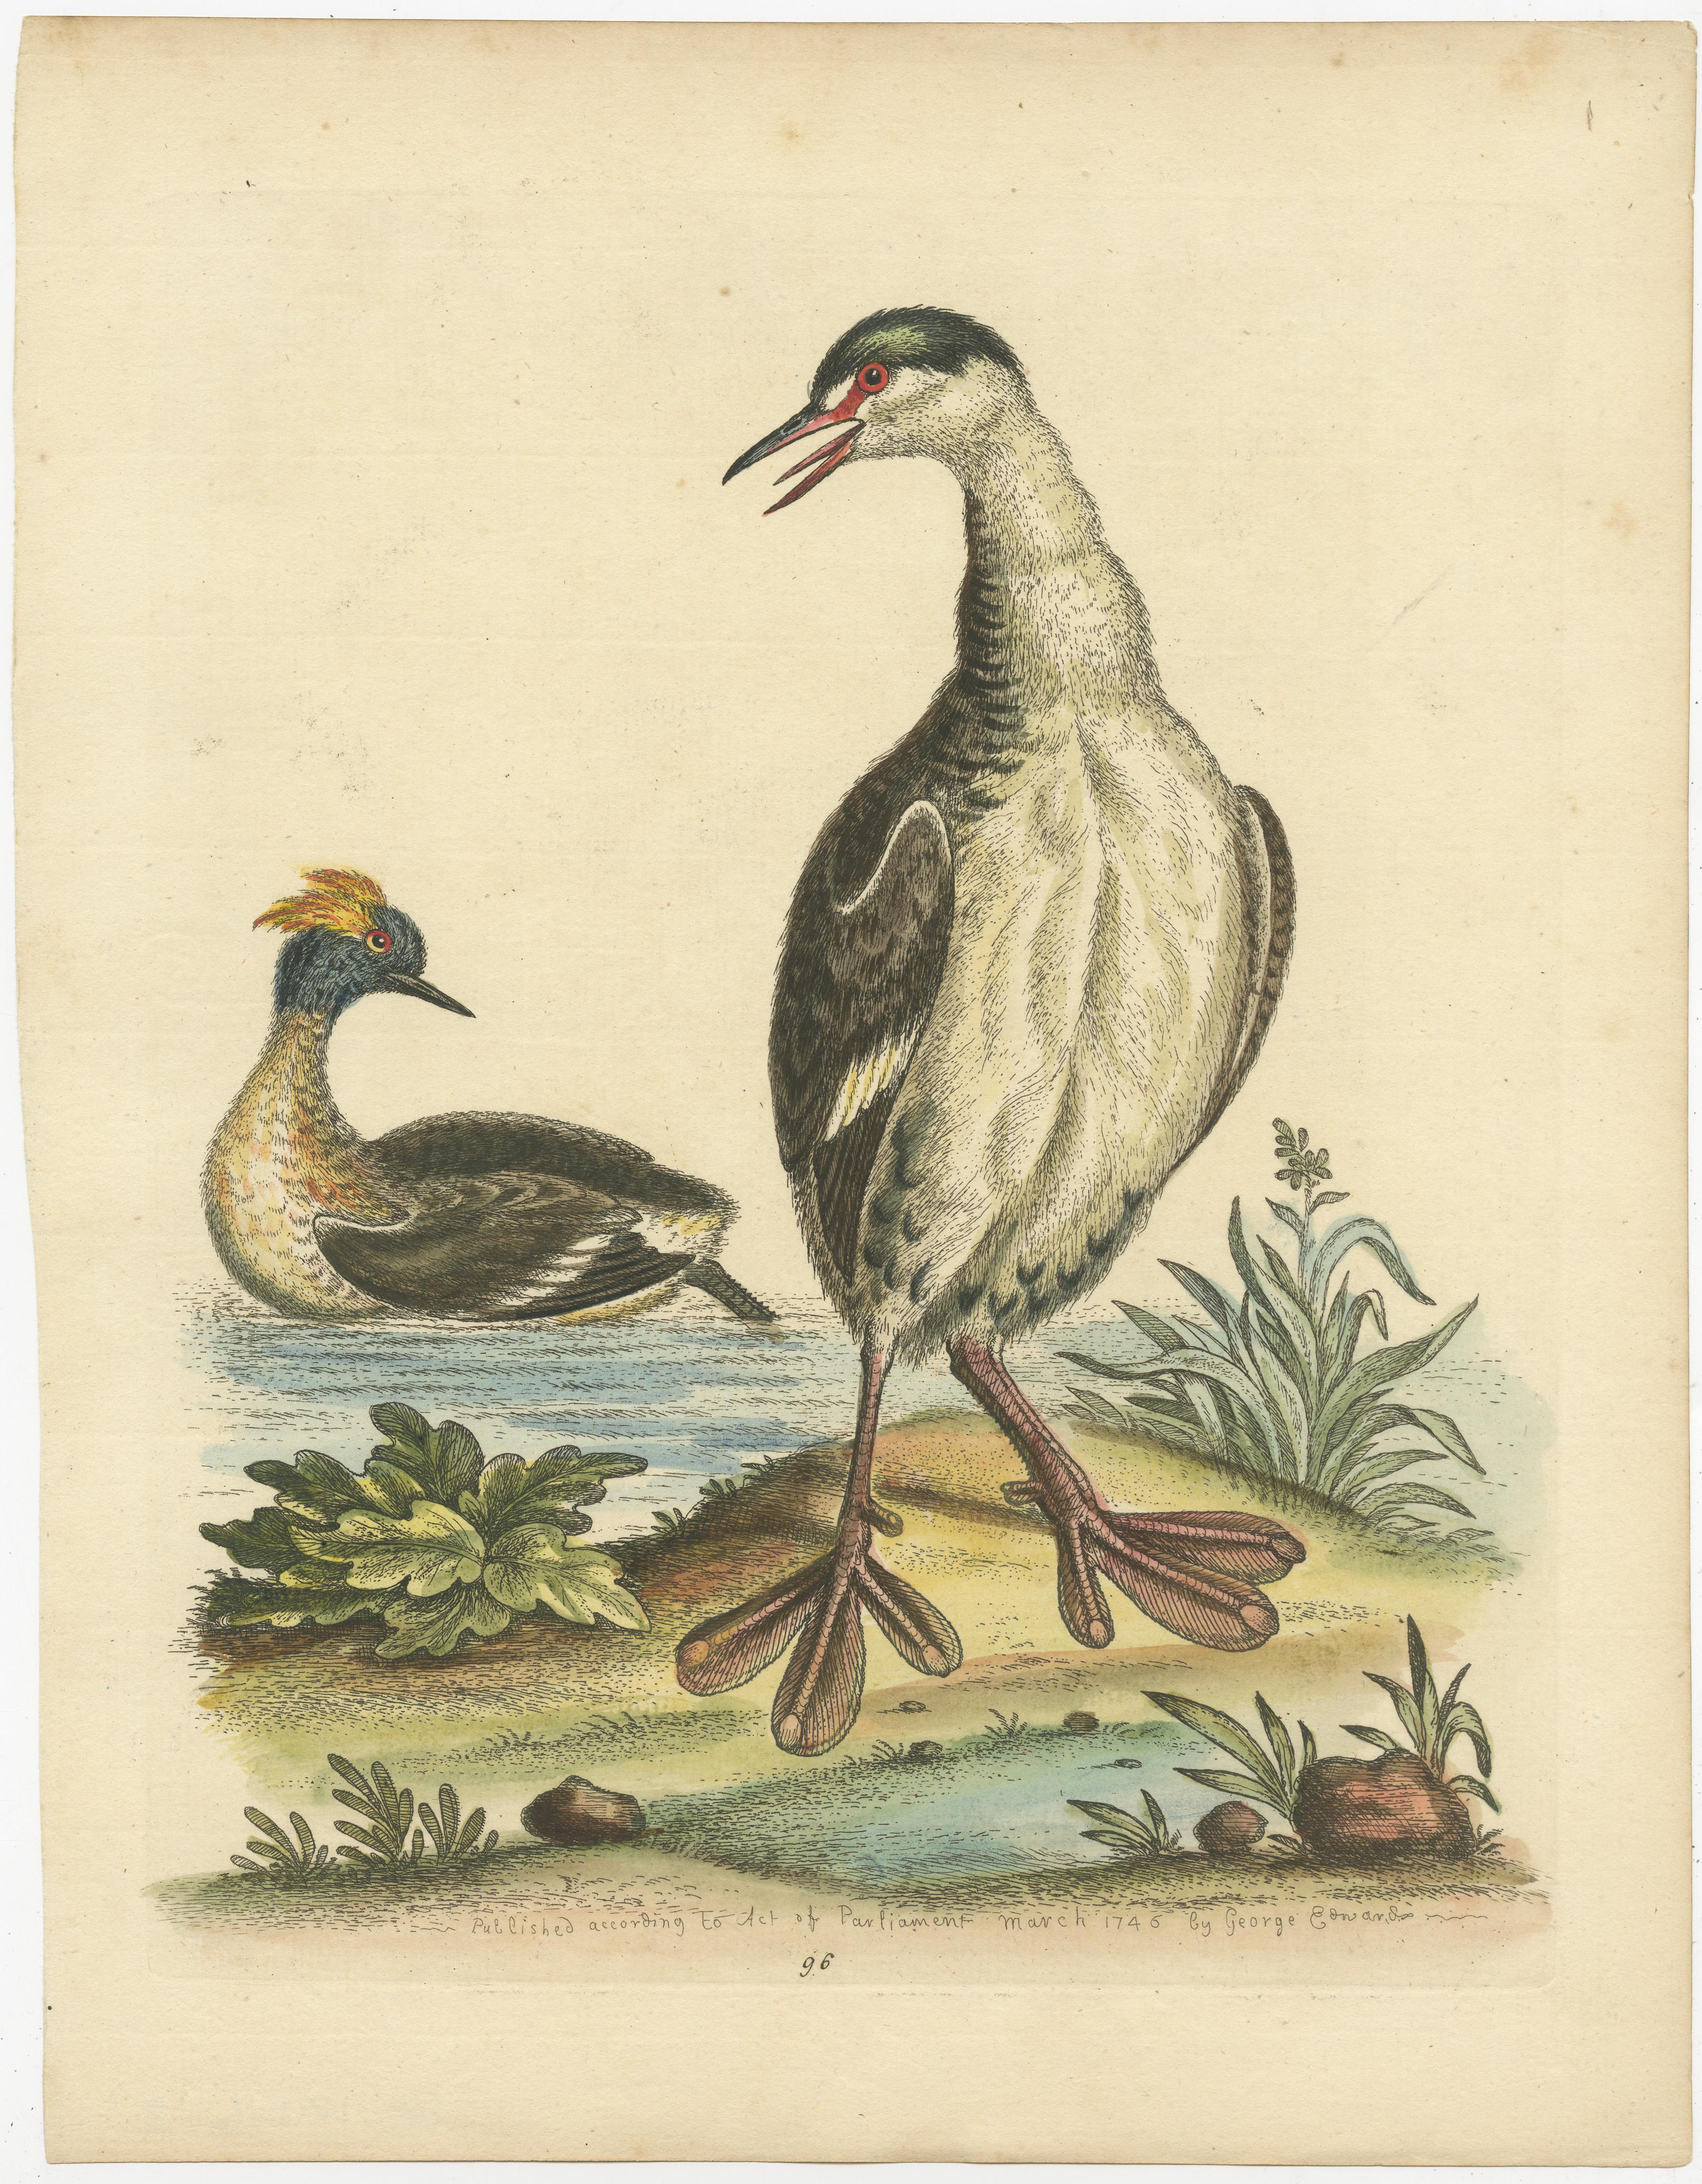 Gravure ancienne originale de deux grèbes, ou dabchick, membres de la famille des grèbes, oiseaux aquatiques. Publié par George Edwards vers 1750. 

George Edwards FRS (3 avril 1694 - 23 juillet 1773) était un naturaliste et ornithologue anglais,